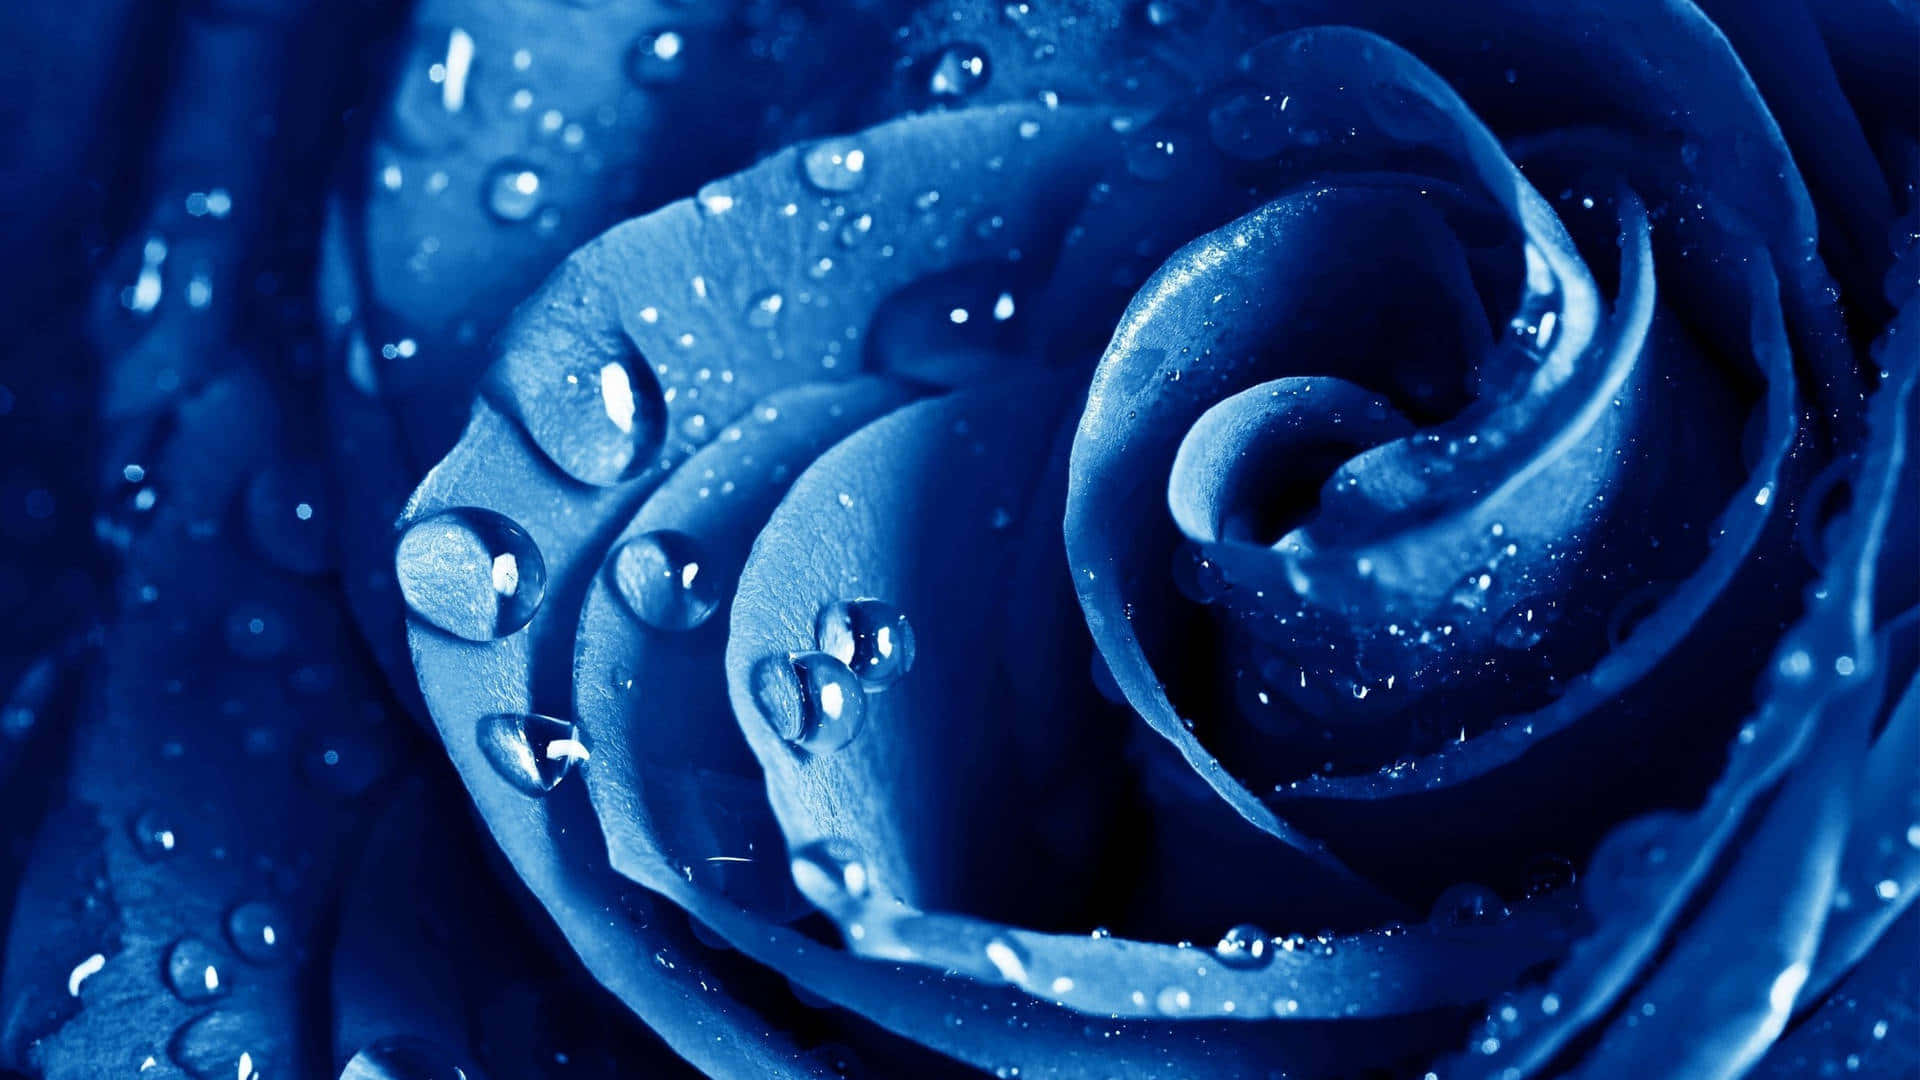 Royal Blue Rose Dew Drops Wallpaper